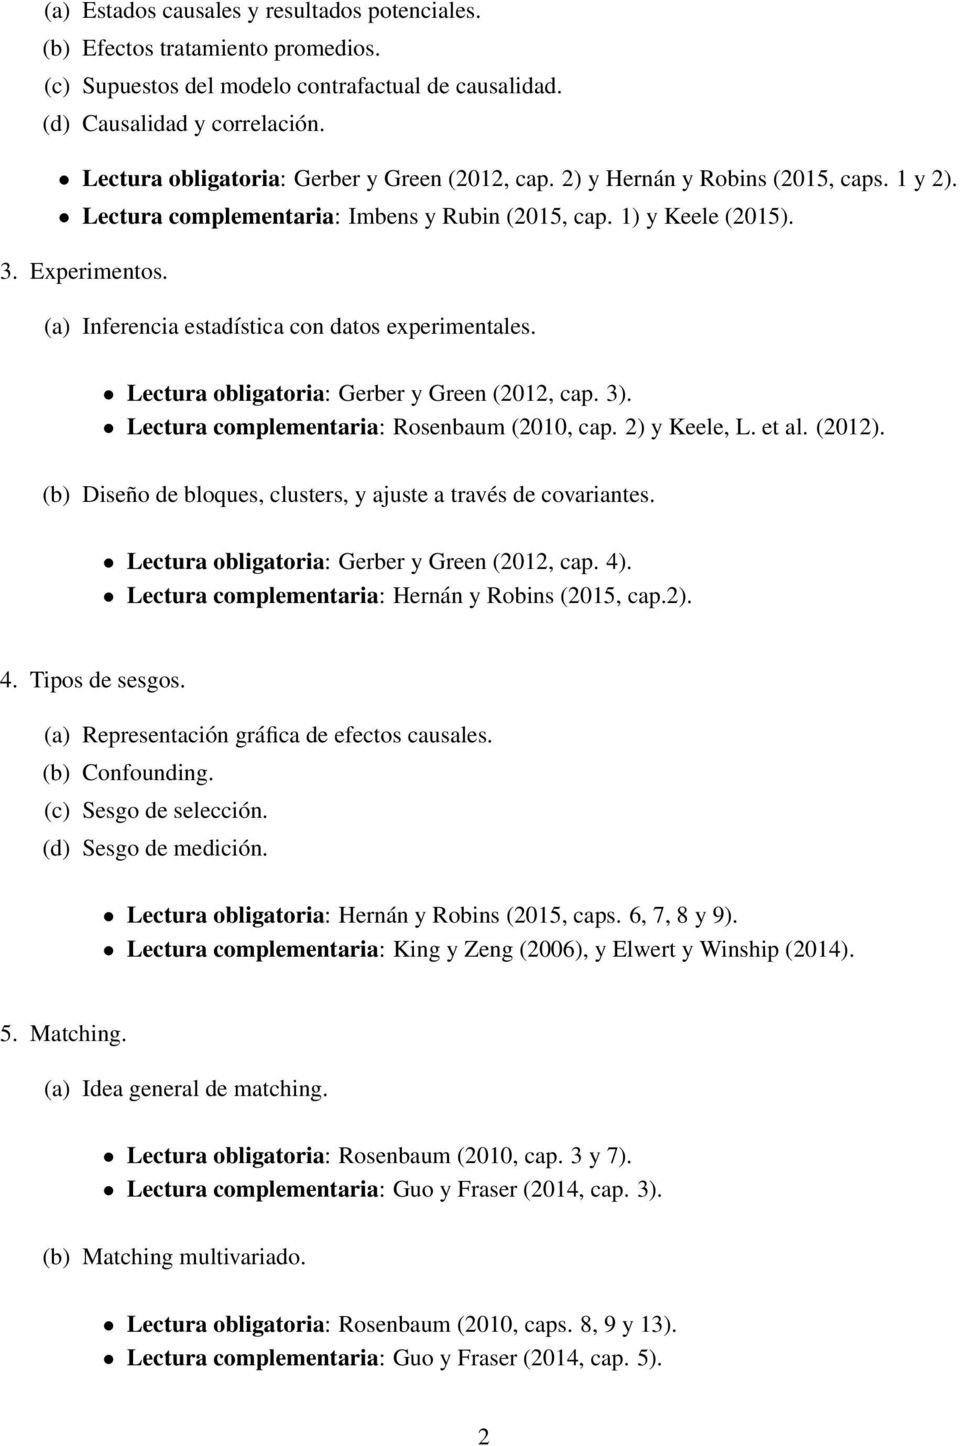 (a) Inferencia estadística con datos experimentales. Lectura obligatoria: Gerber y Green (2012, cap. 3). Lectura complementaria: Rosenbaum (2010, cap. 2) y Keele, L. et al. (2012).